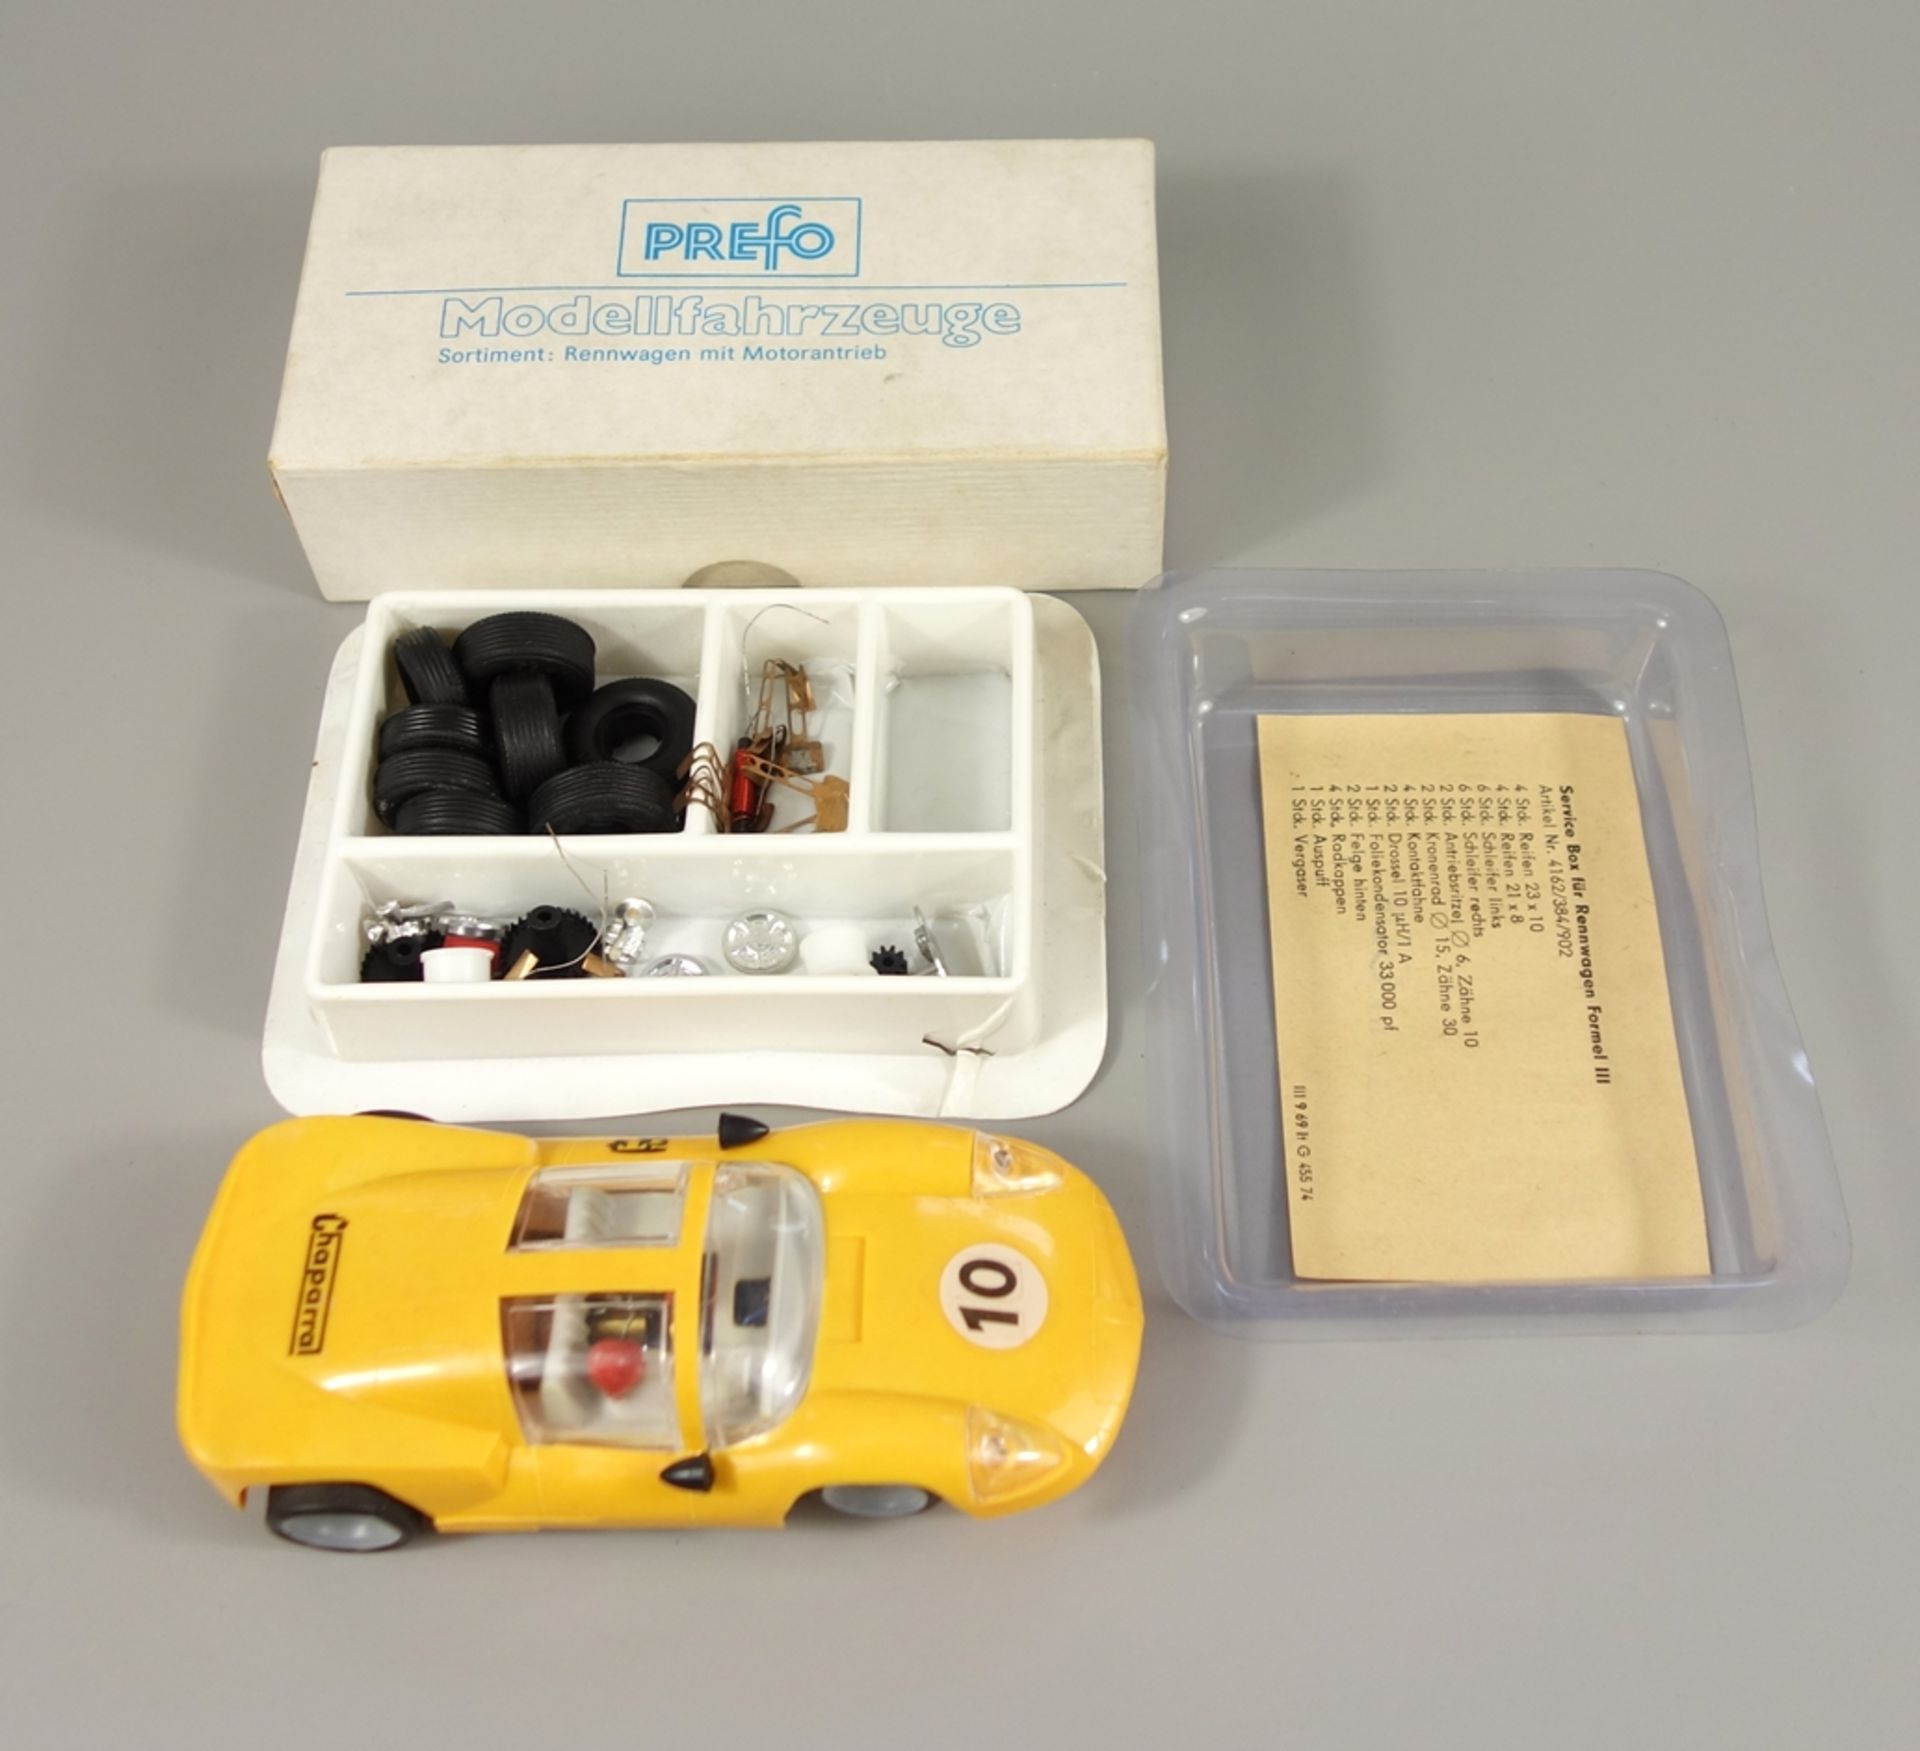 Modellfahrzeug, Formel III Rennwagen und Service Box, Prefo (Pressformwerk), Dresden, DDR, in OVP, - Bild 2 aus 2